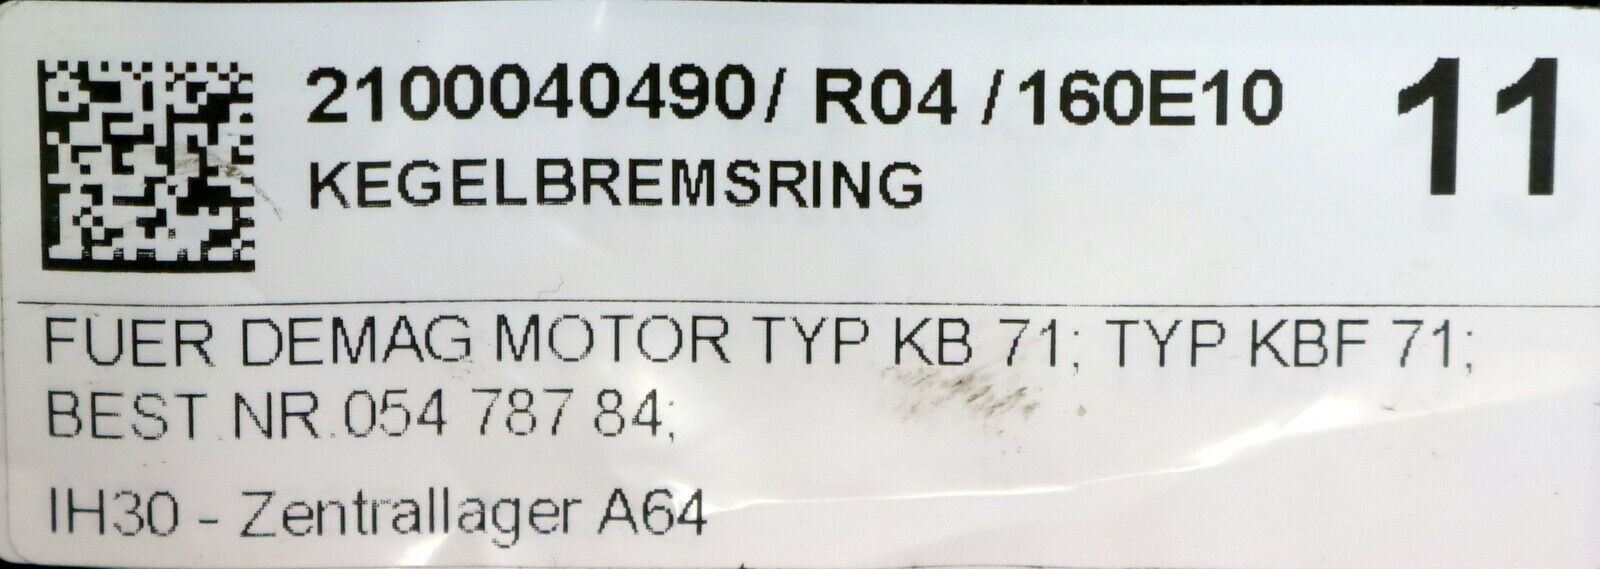 DEMAG Kegelbremsring Best.Nr. 05478784 für DEMAG Motor Typ RIW KB71 und KBF71